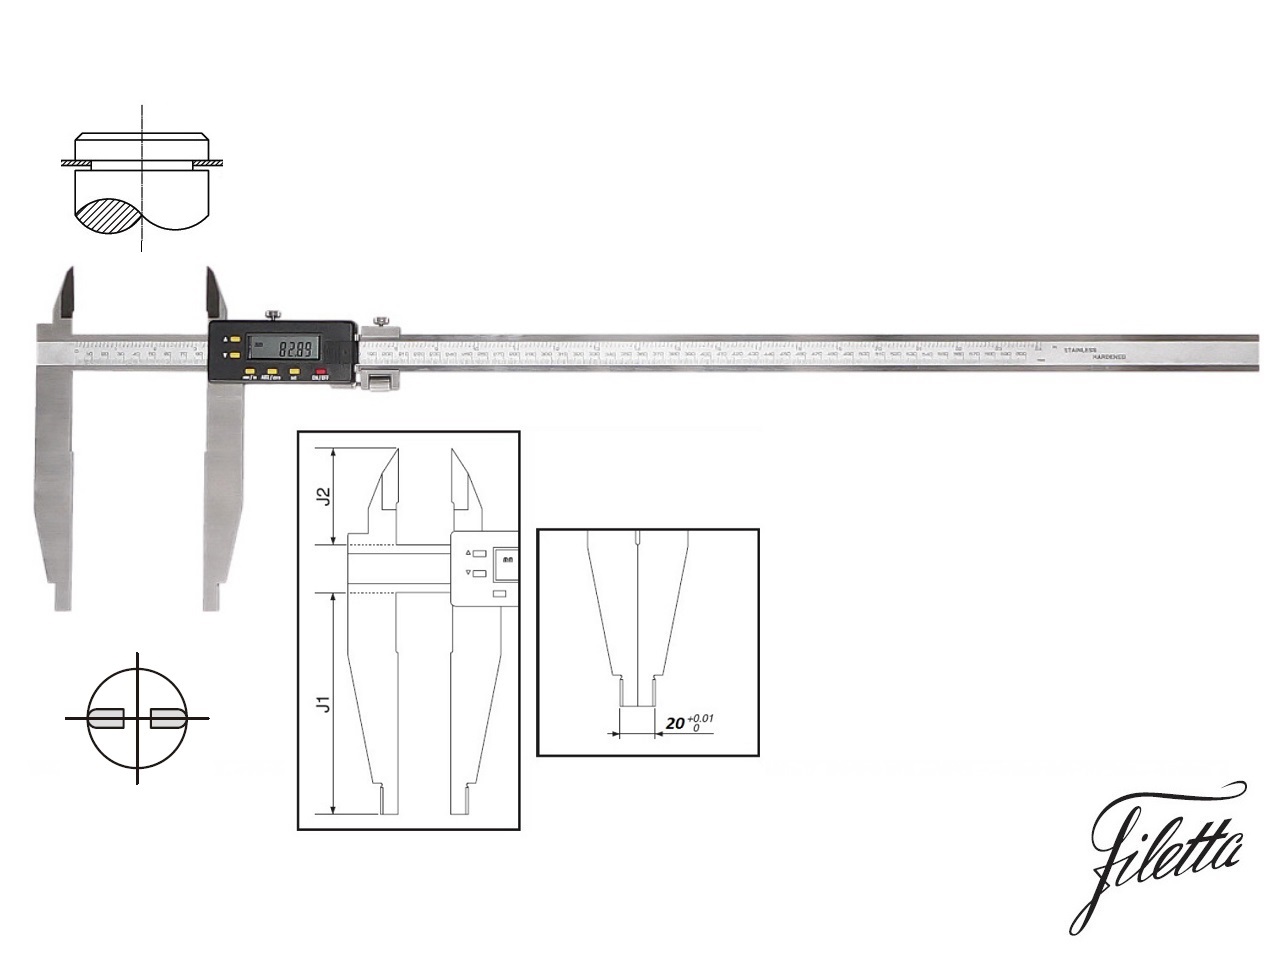 Digitální posuvné měřítko Filetta 0-300/150 mm s měřicími nožíky pro vnější měření